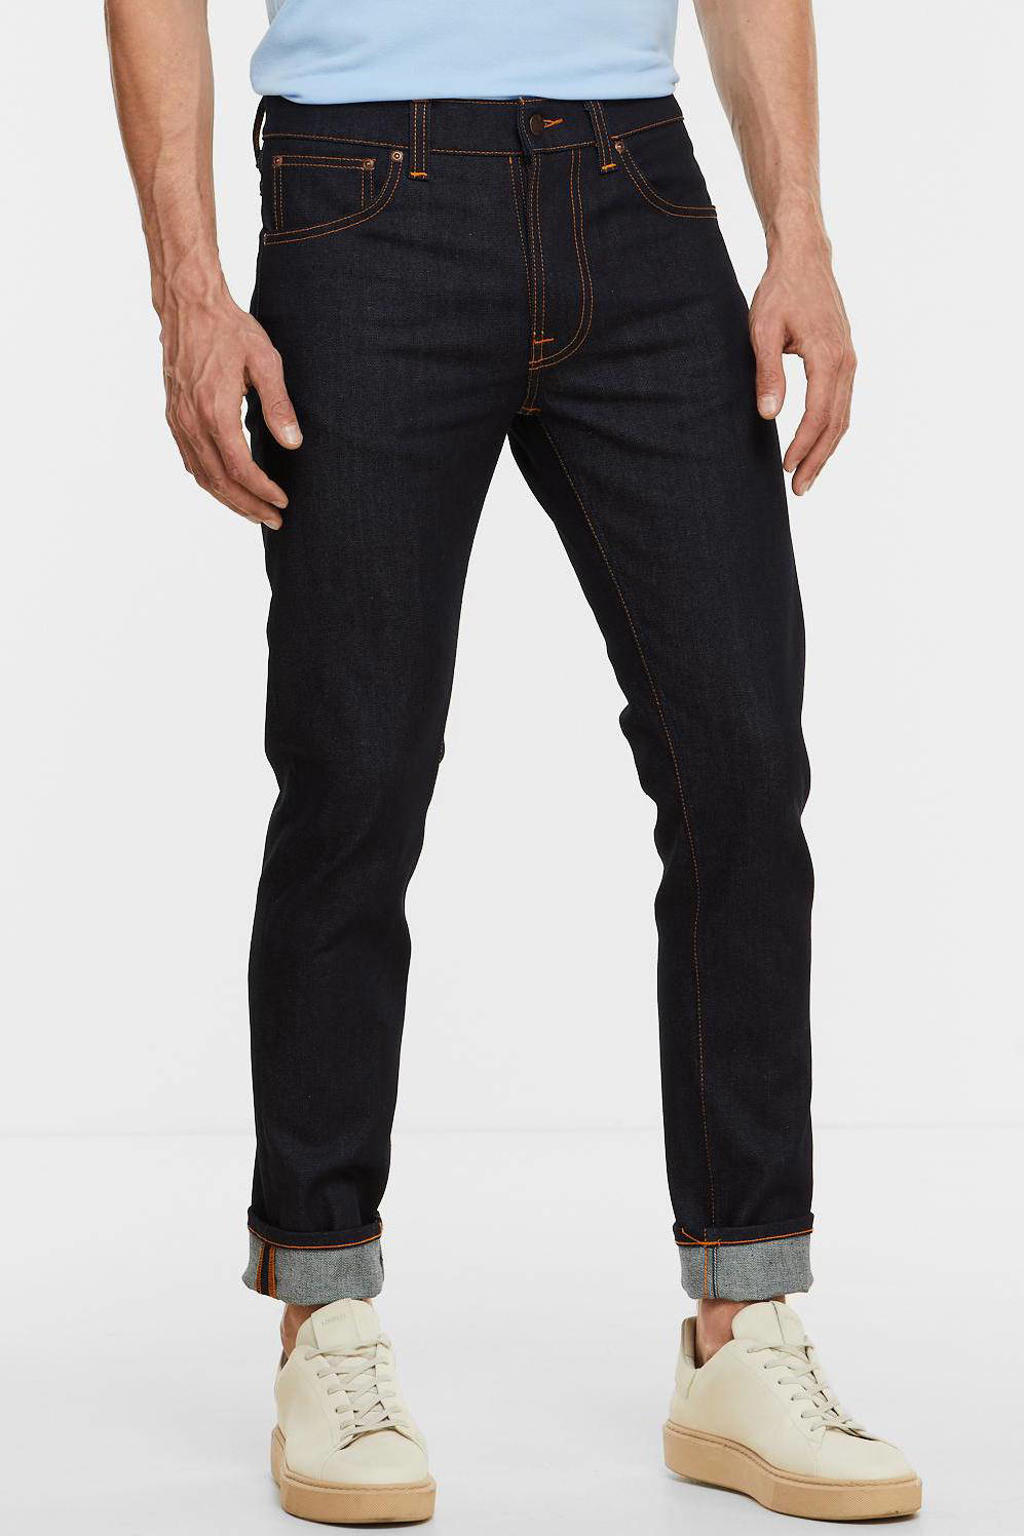 Nudie Jeans slim fit jeans Lean Dean dry indigofera